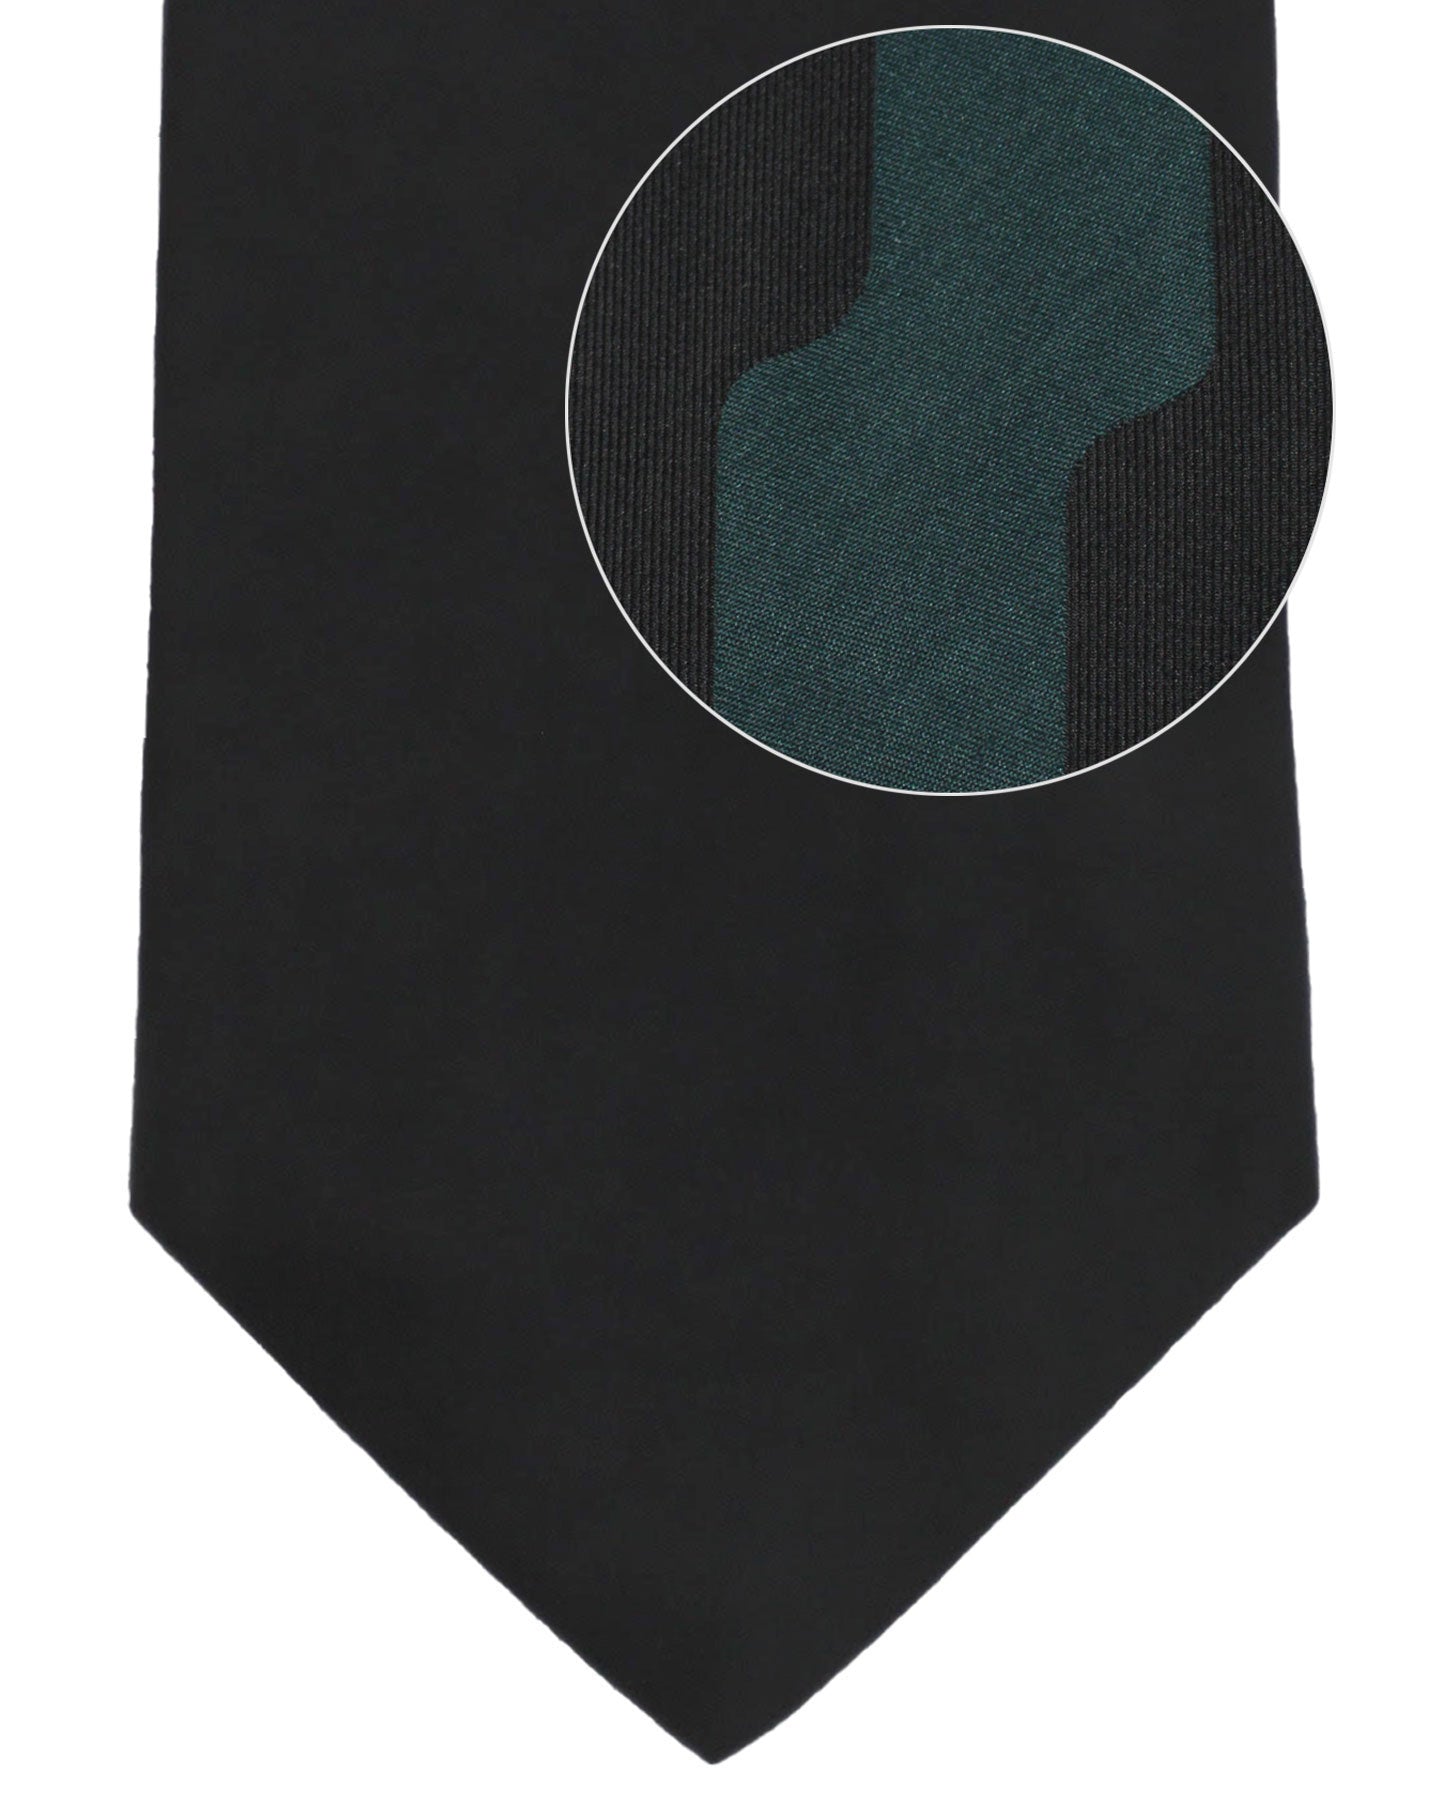 Gene Meyer Silk Designer Tie Black Forest Green Design - Hand Made in Italy